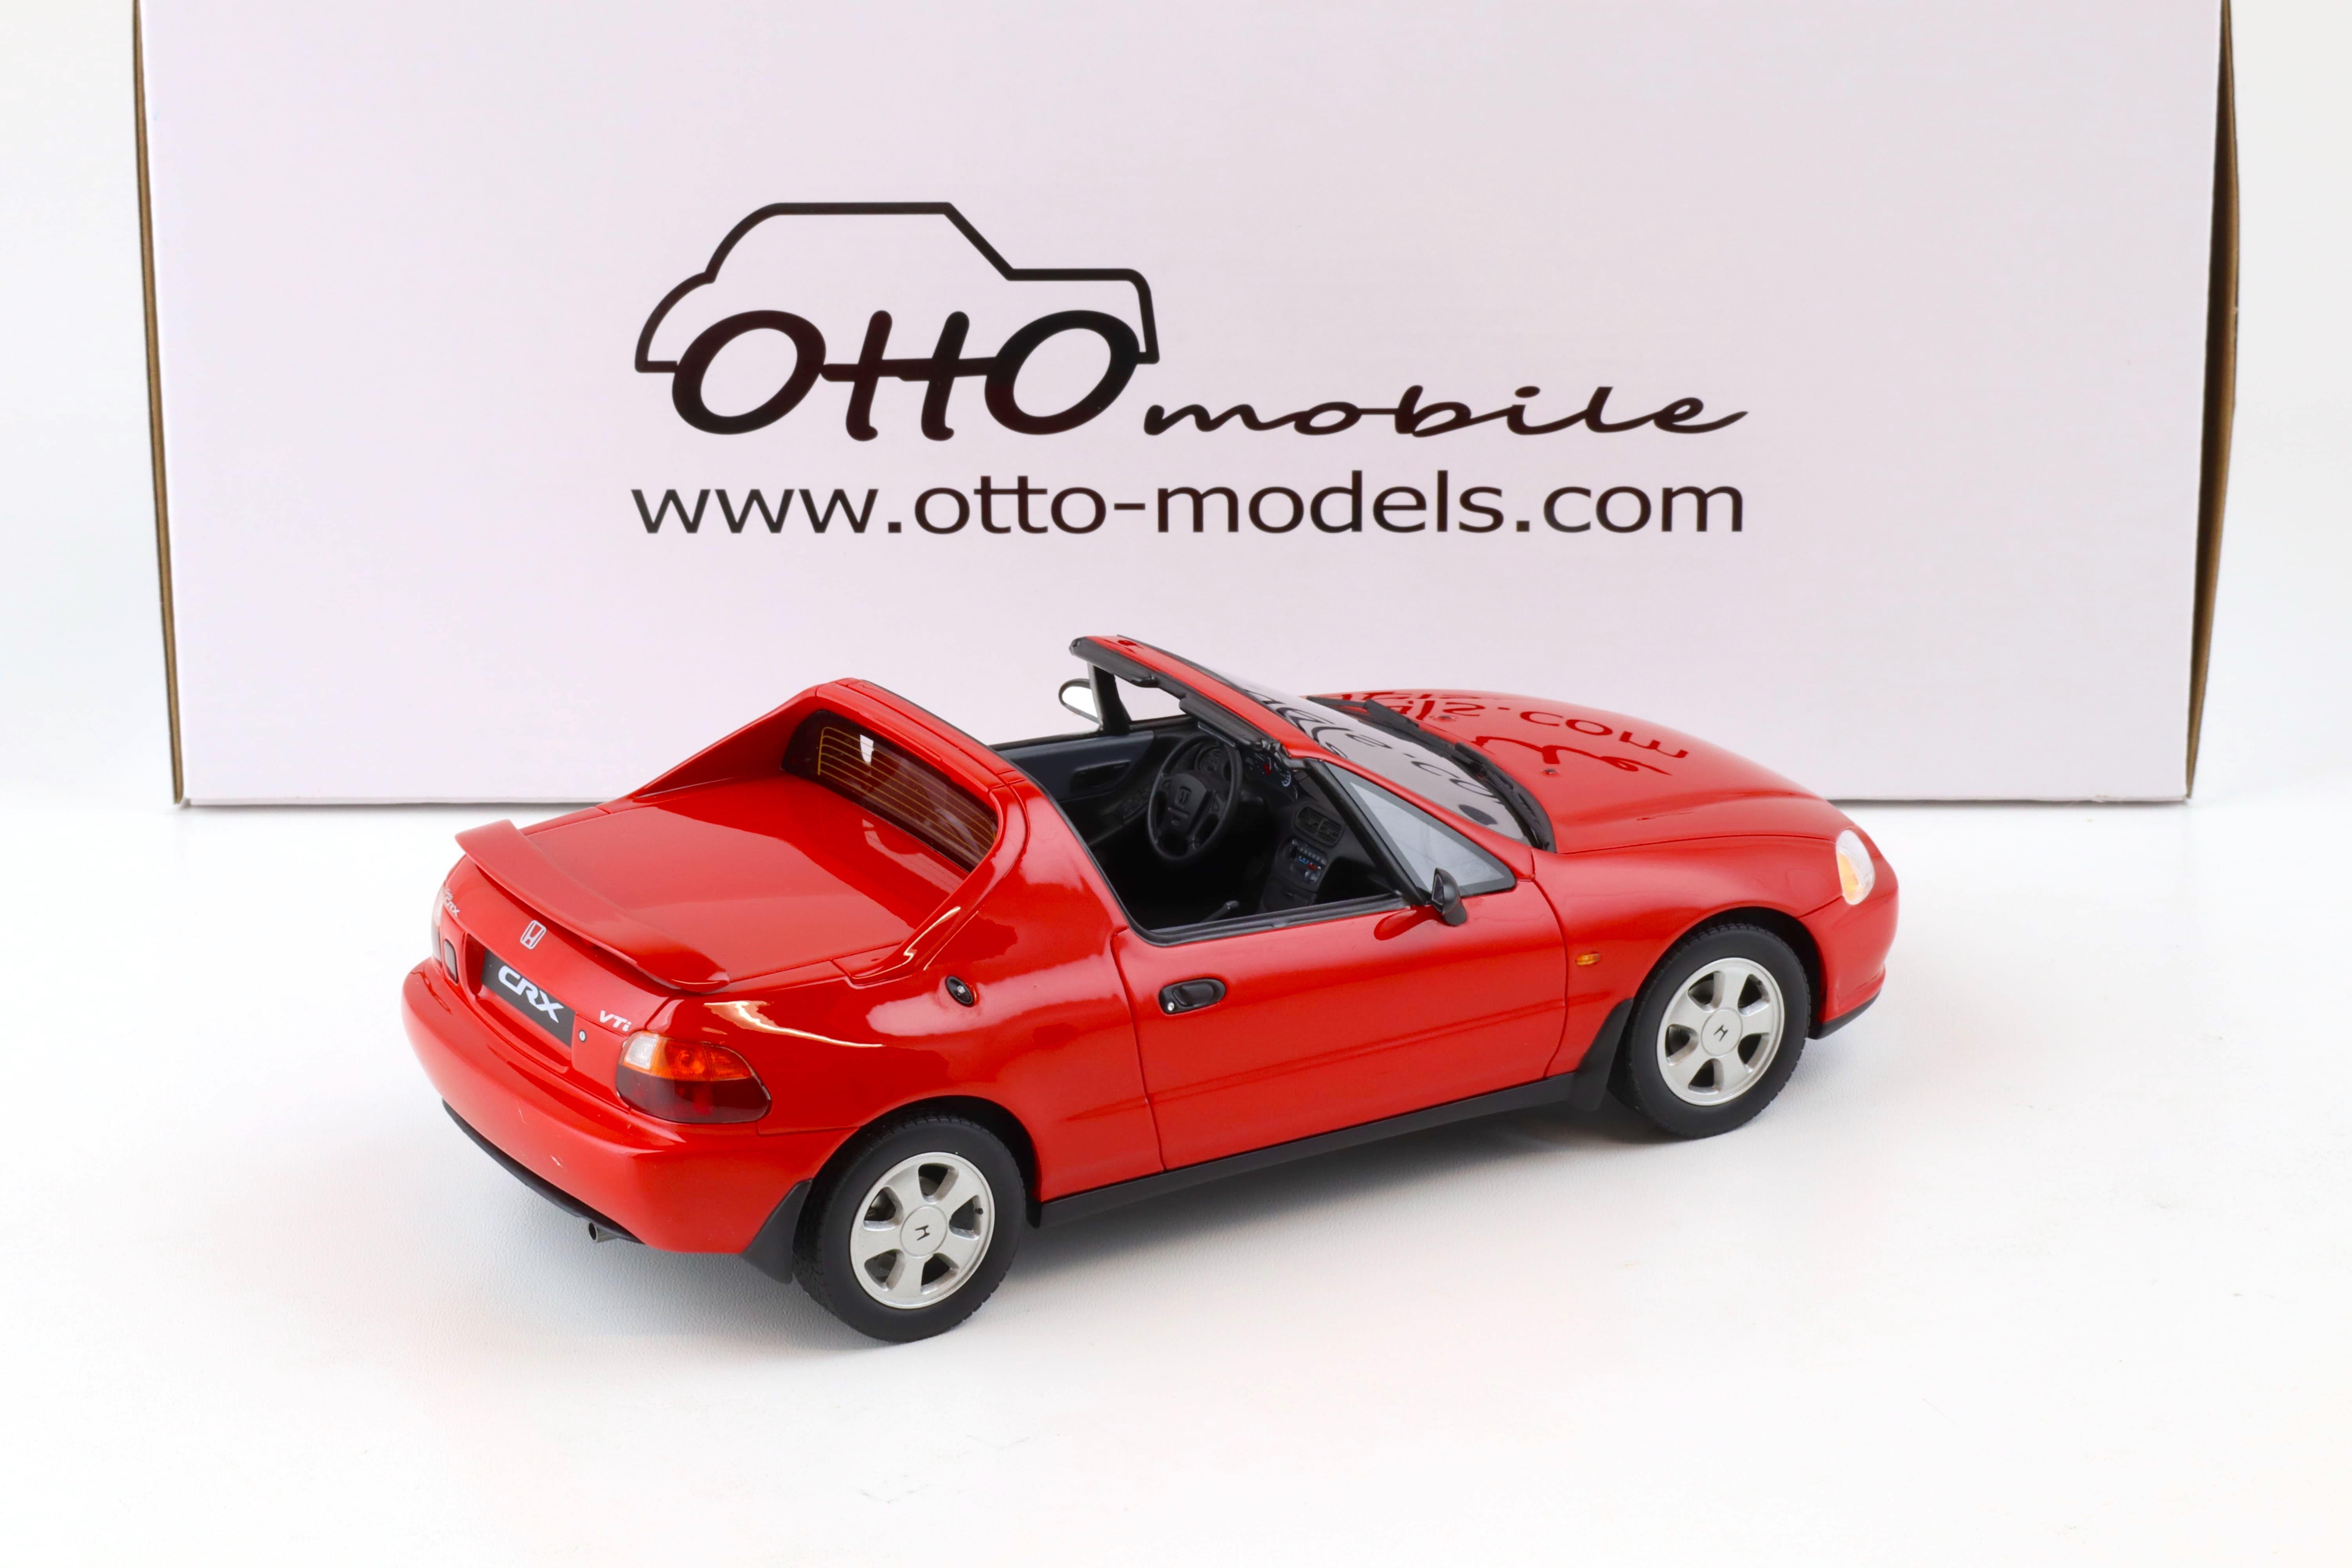 1:18 OTTO mobile OT415 Honda Civic CRX VTI Del Sol red 1995